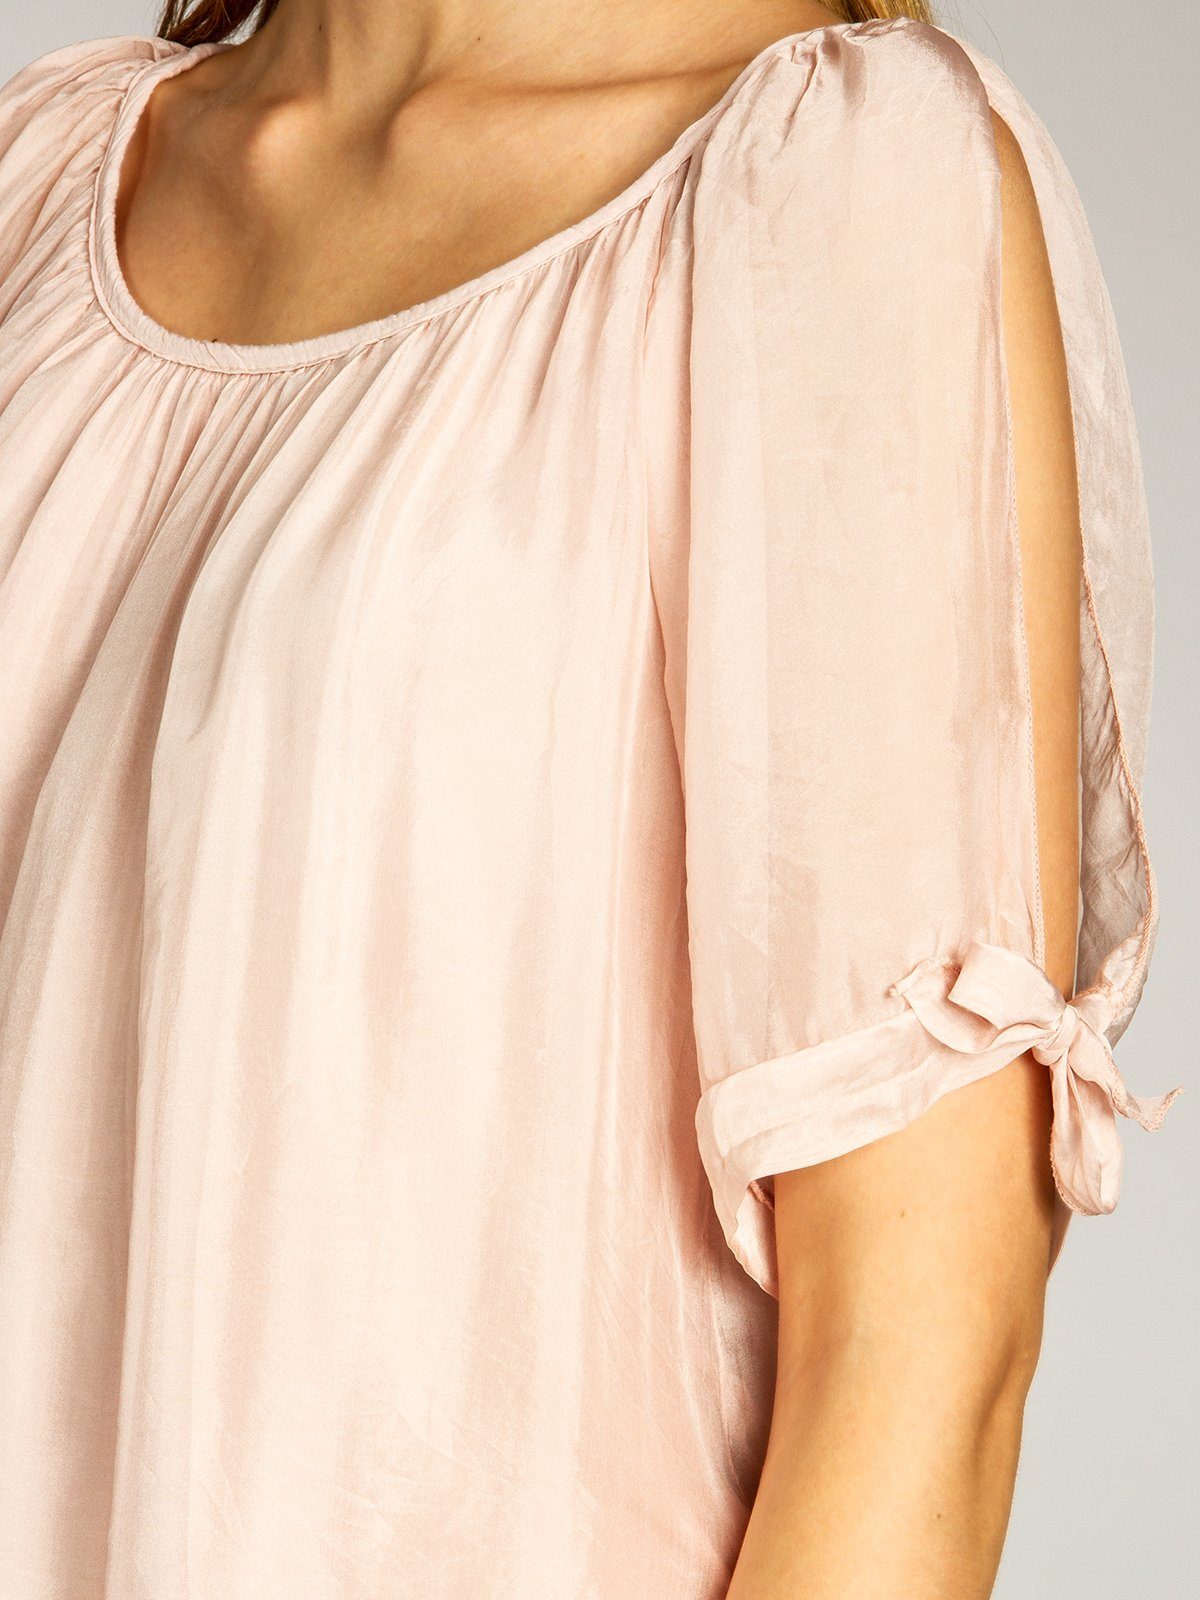 Caspar Shirtbluse BLU020 Bluse Sommer elegante lange Seidenanteil mit rosa leichte Damen